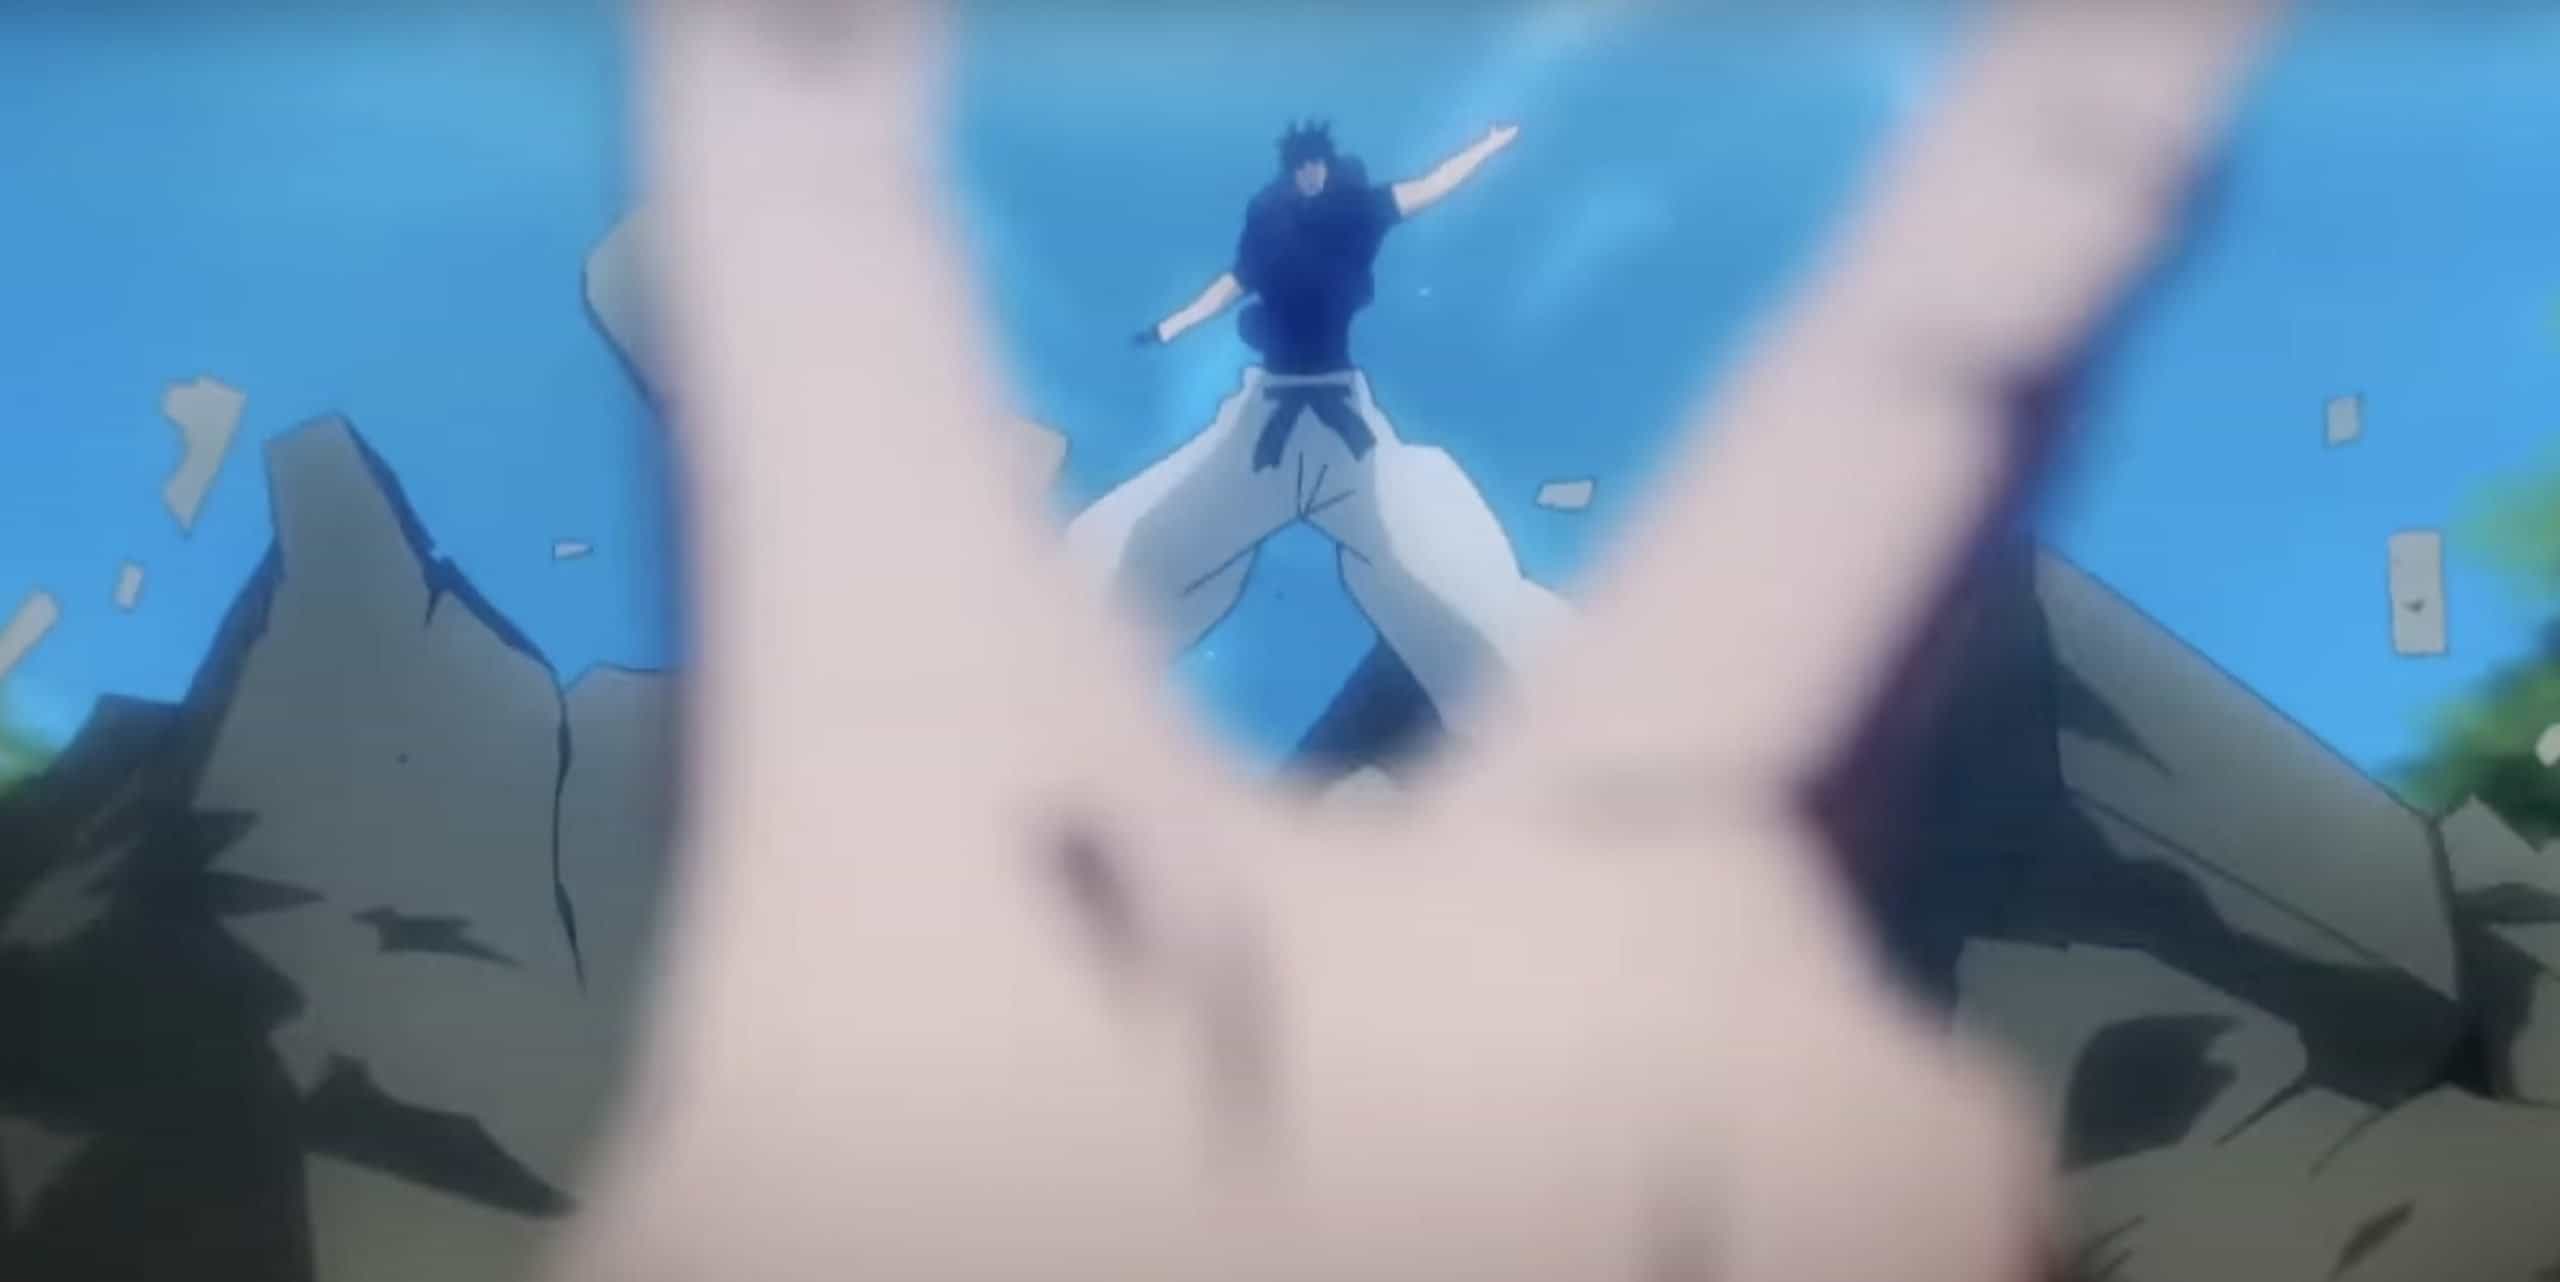 Jujutsu Kaisen Season 2 Trailer Animation Breakdown